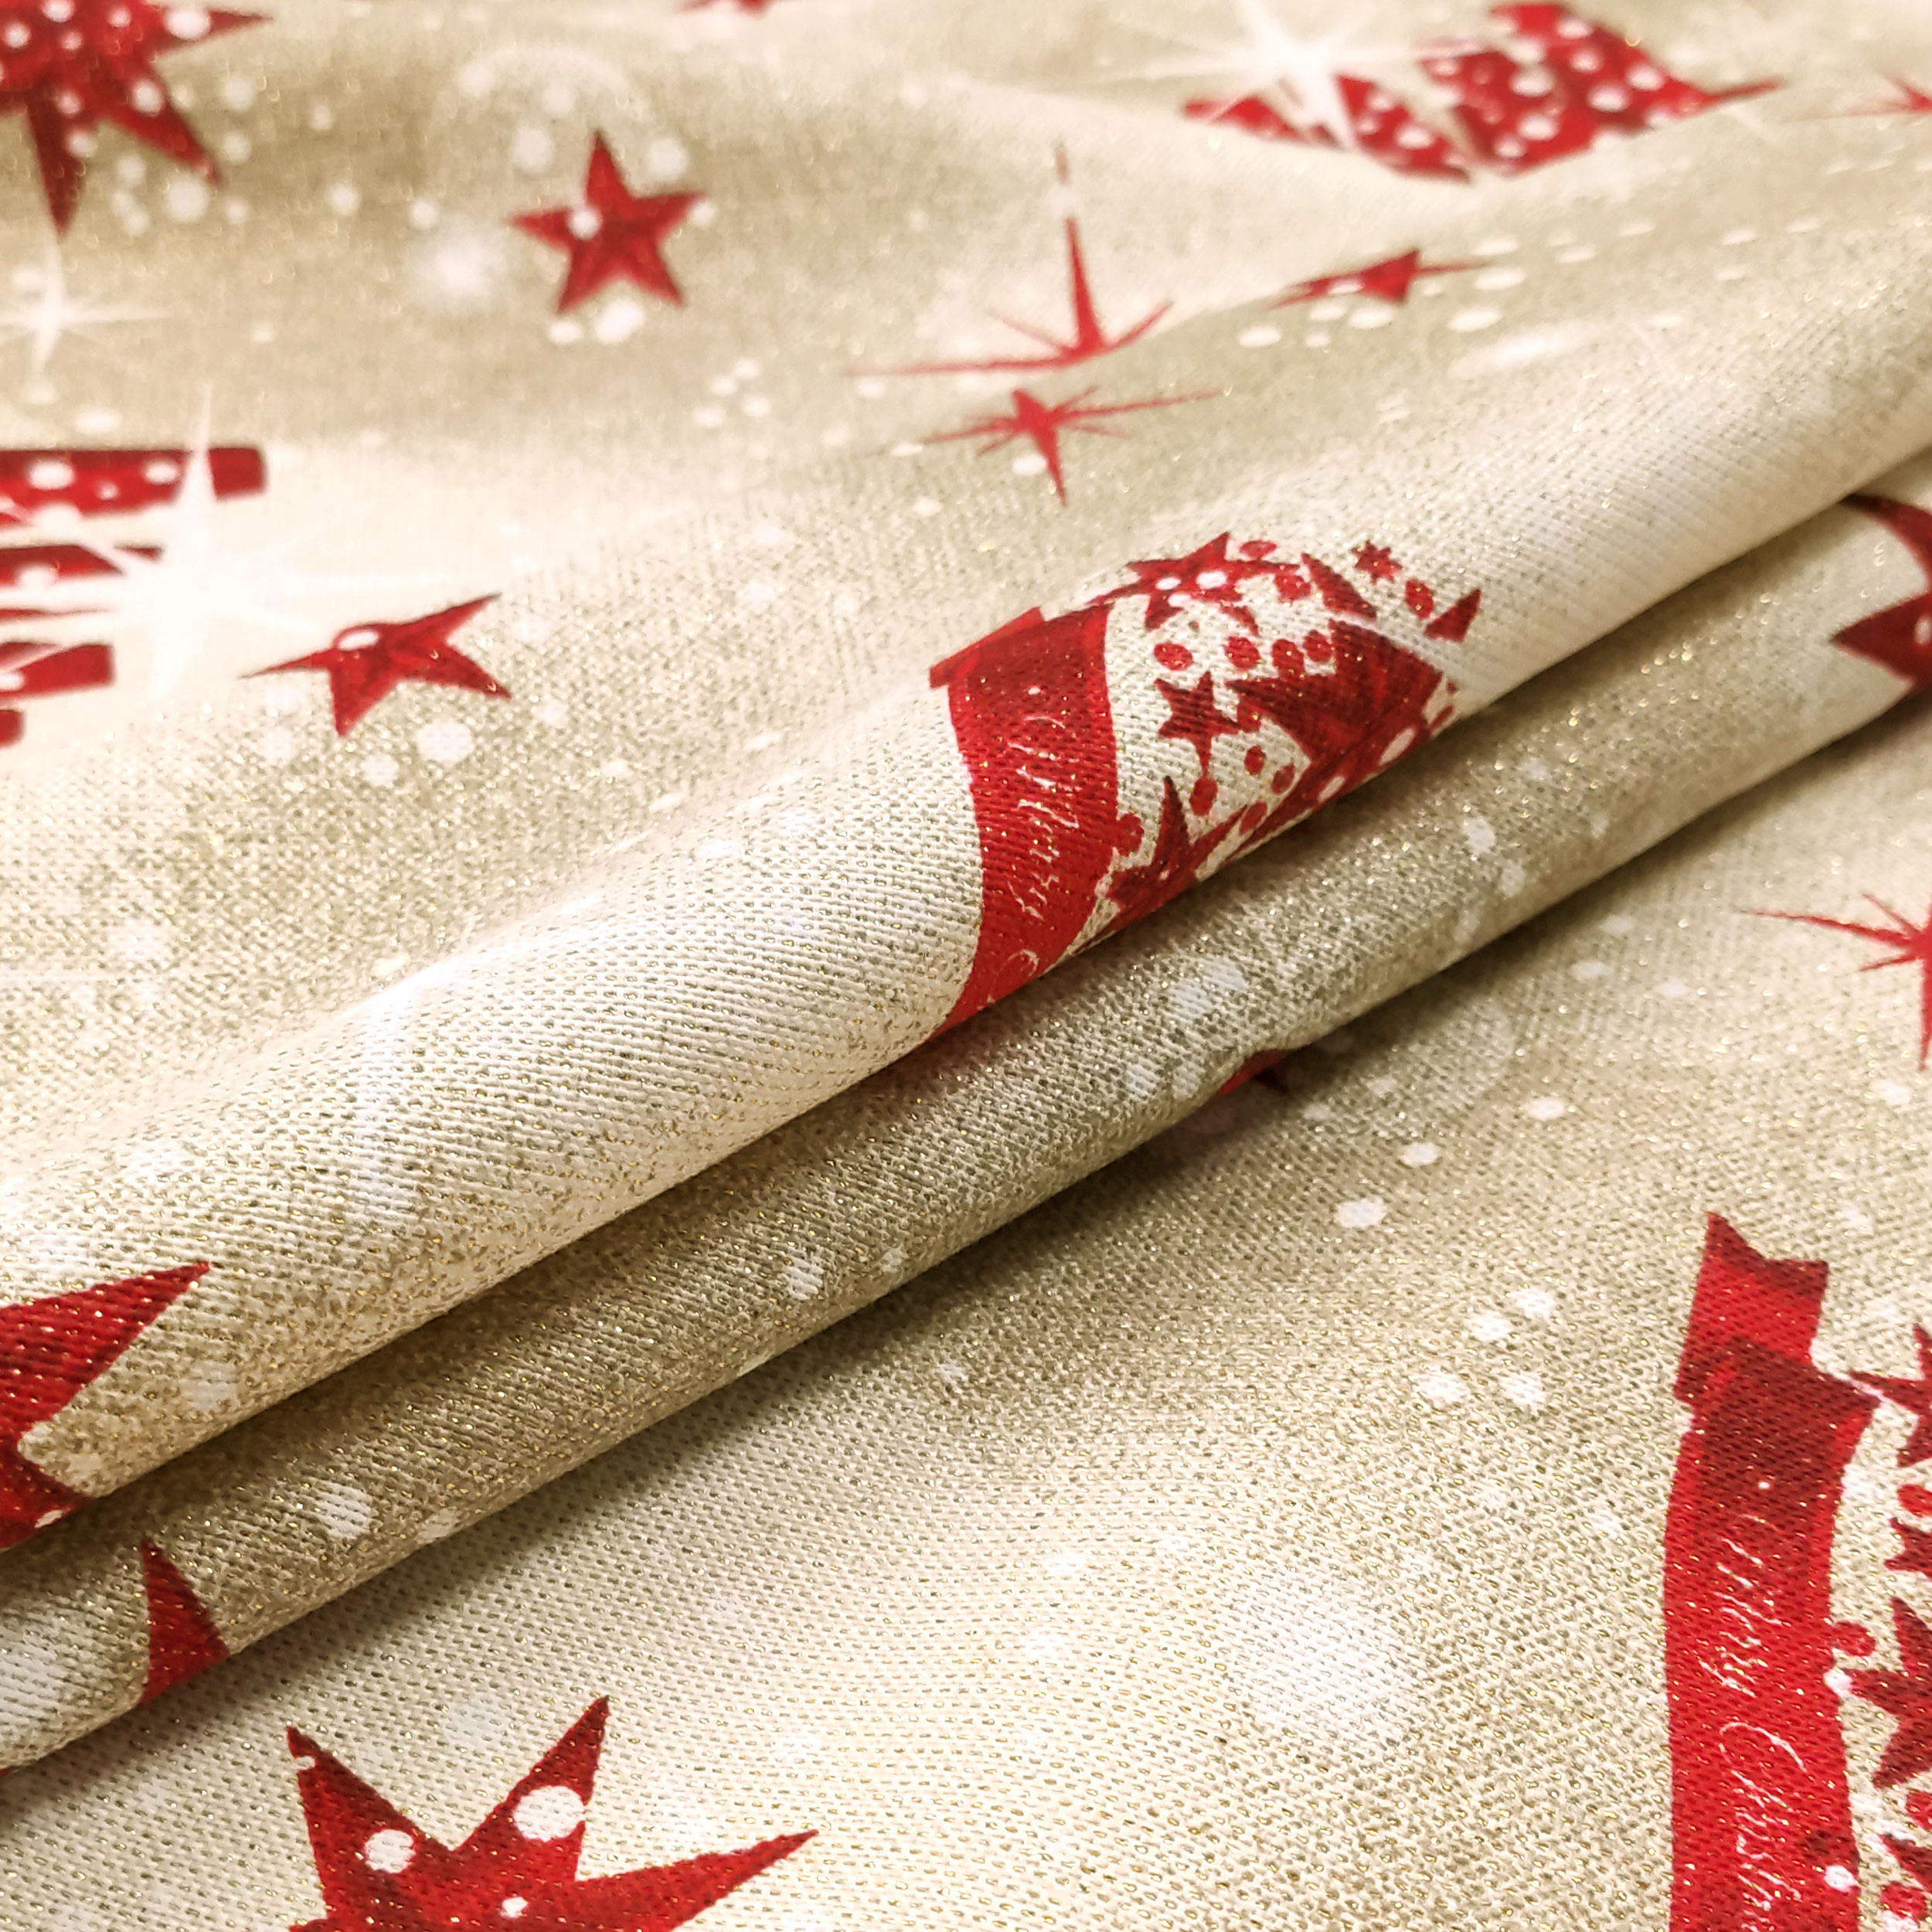 tessuto-per-arredamento-natalizio-con-alberelli-rossi